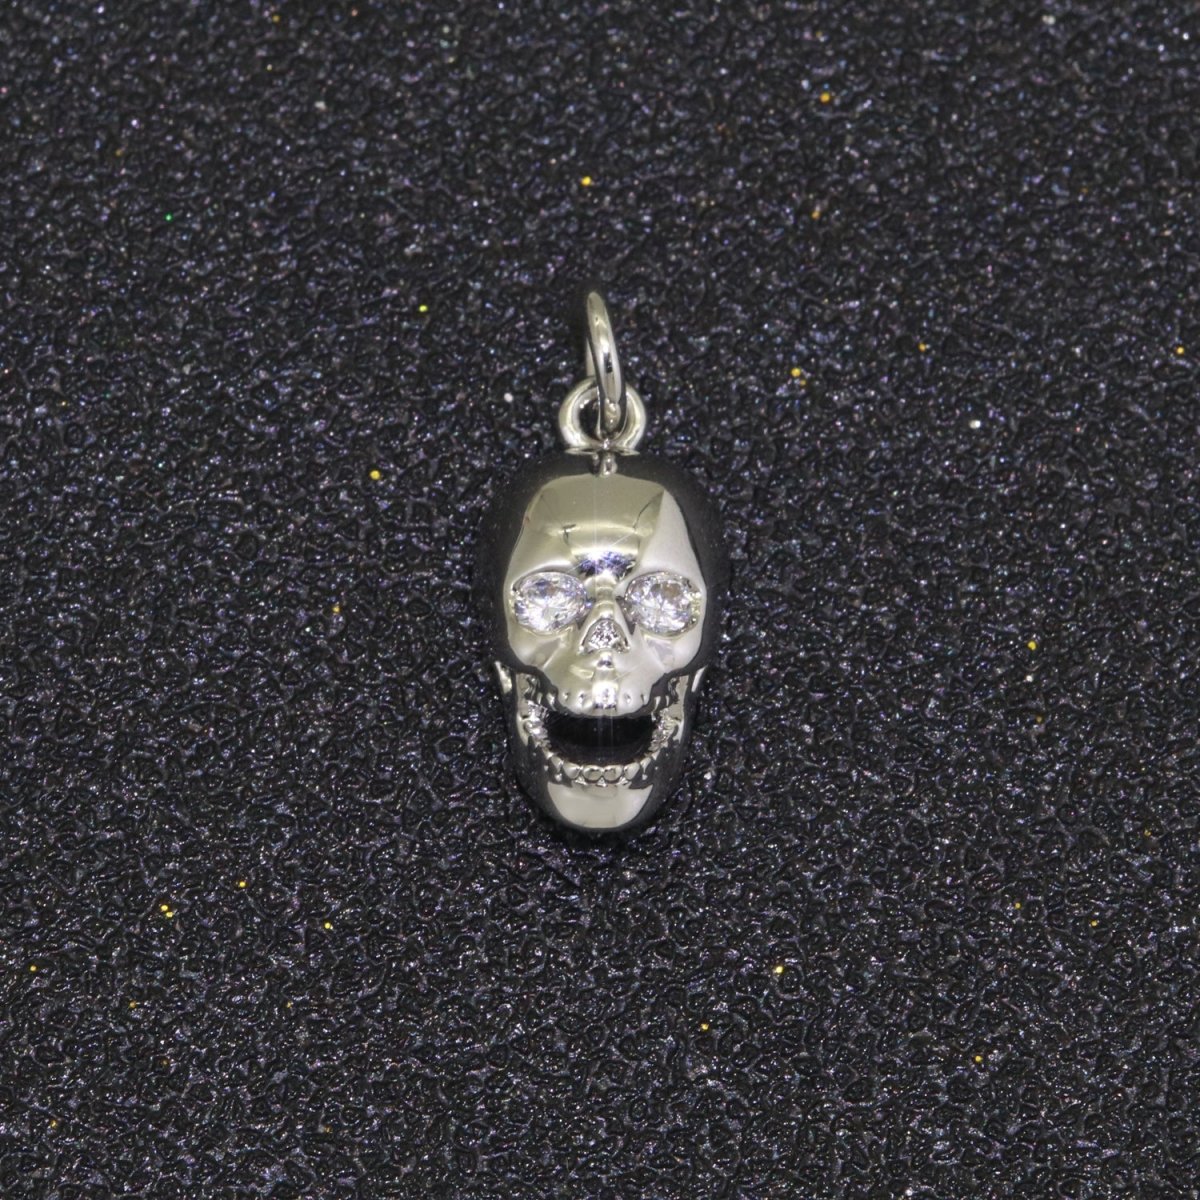 Gold Skull Charm, Skull Pendant, 3D Skull Pendant Gold Filled Charm, Pewter, Silver Black Gun Metal Charm Bracelet Necklace for halloween M-508 - M-510 - DLUXCA